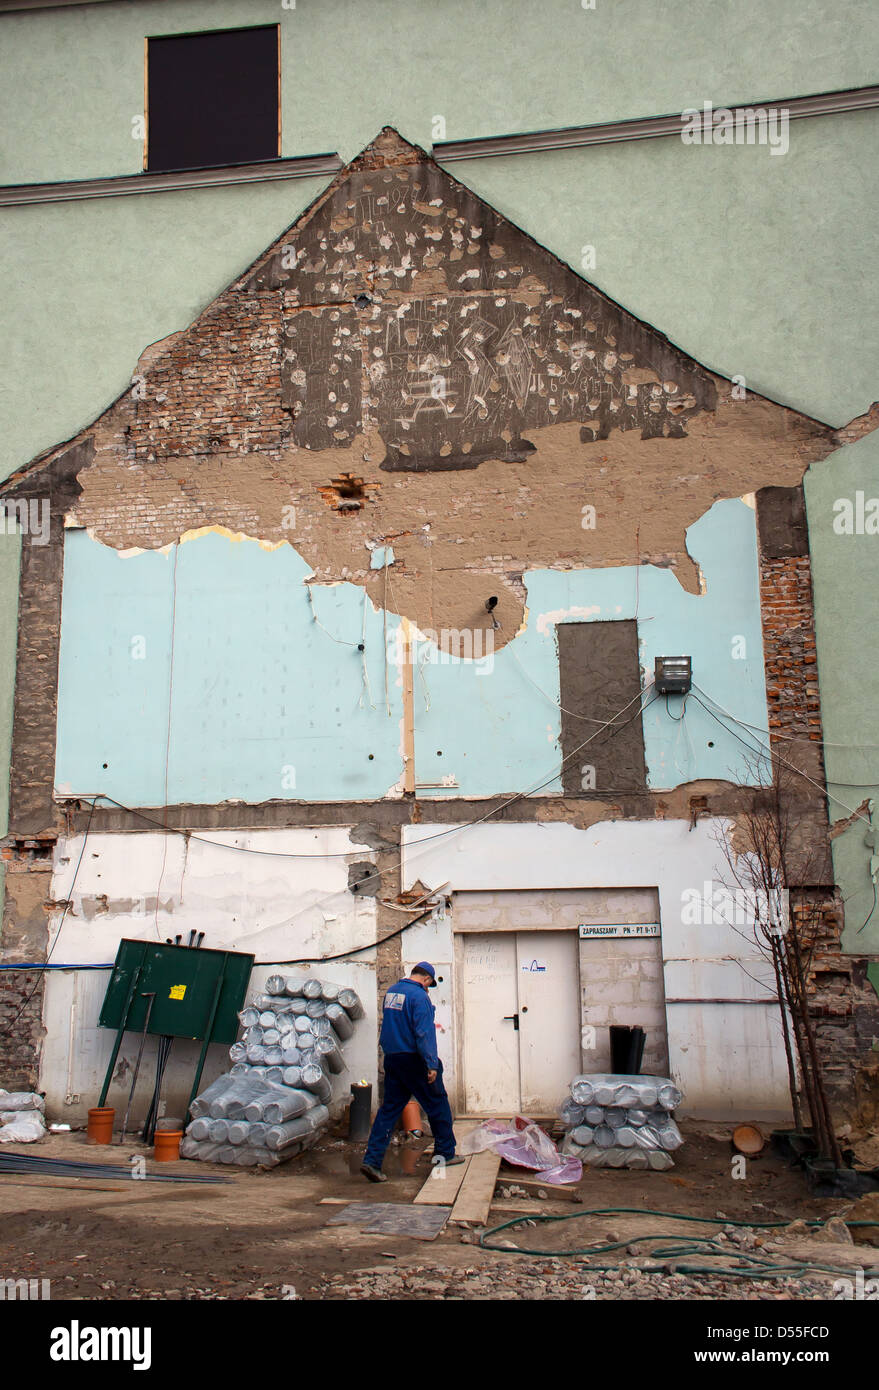 Poznan, Pologne, donne un aperçu d'une maison démolie sur le côté d'un immeuble Banque D'Images